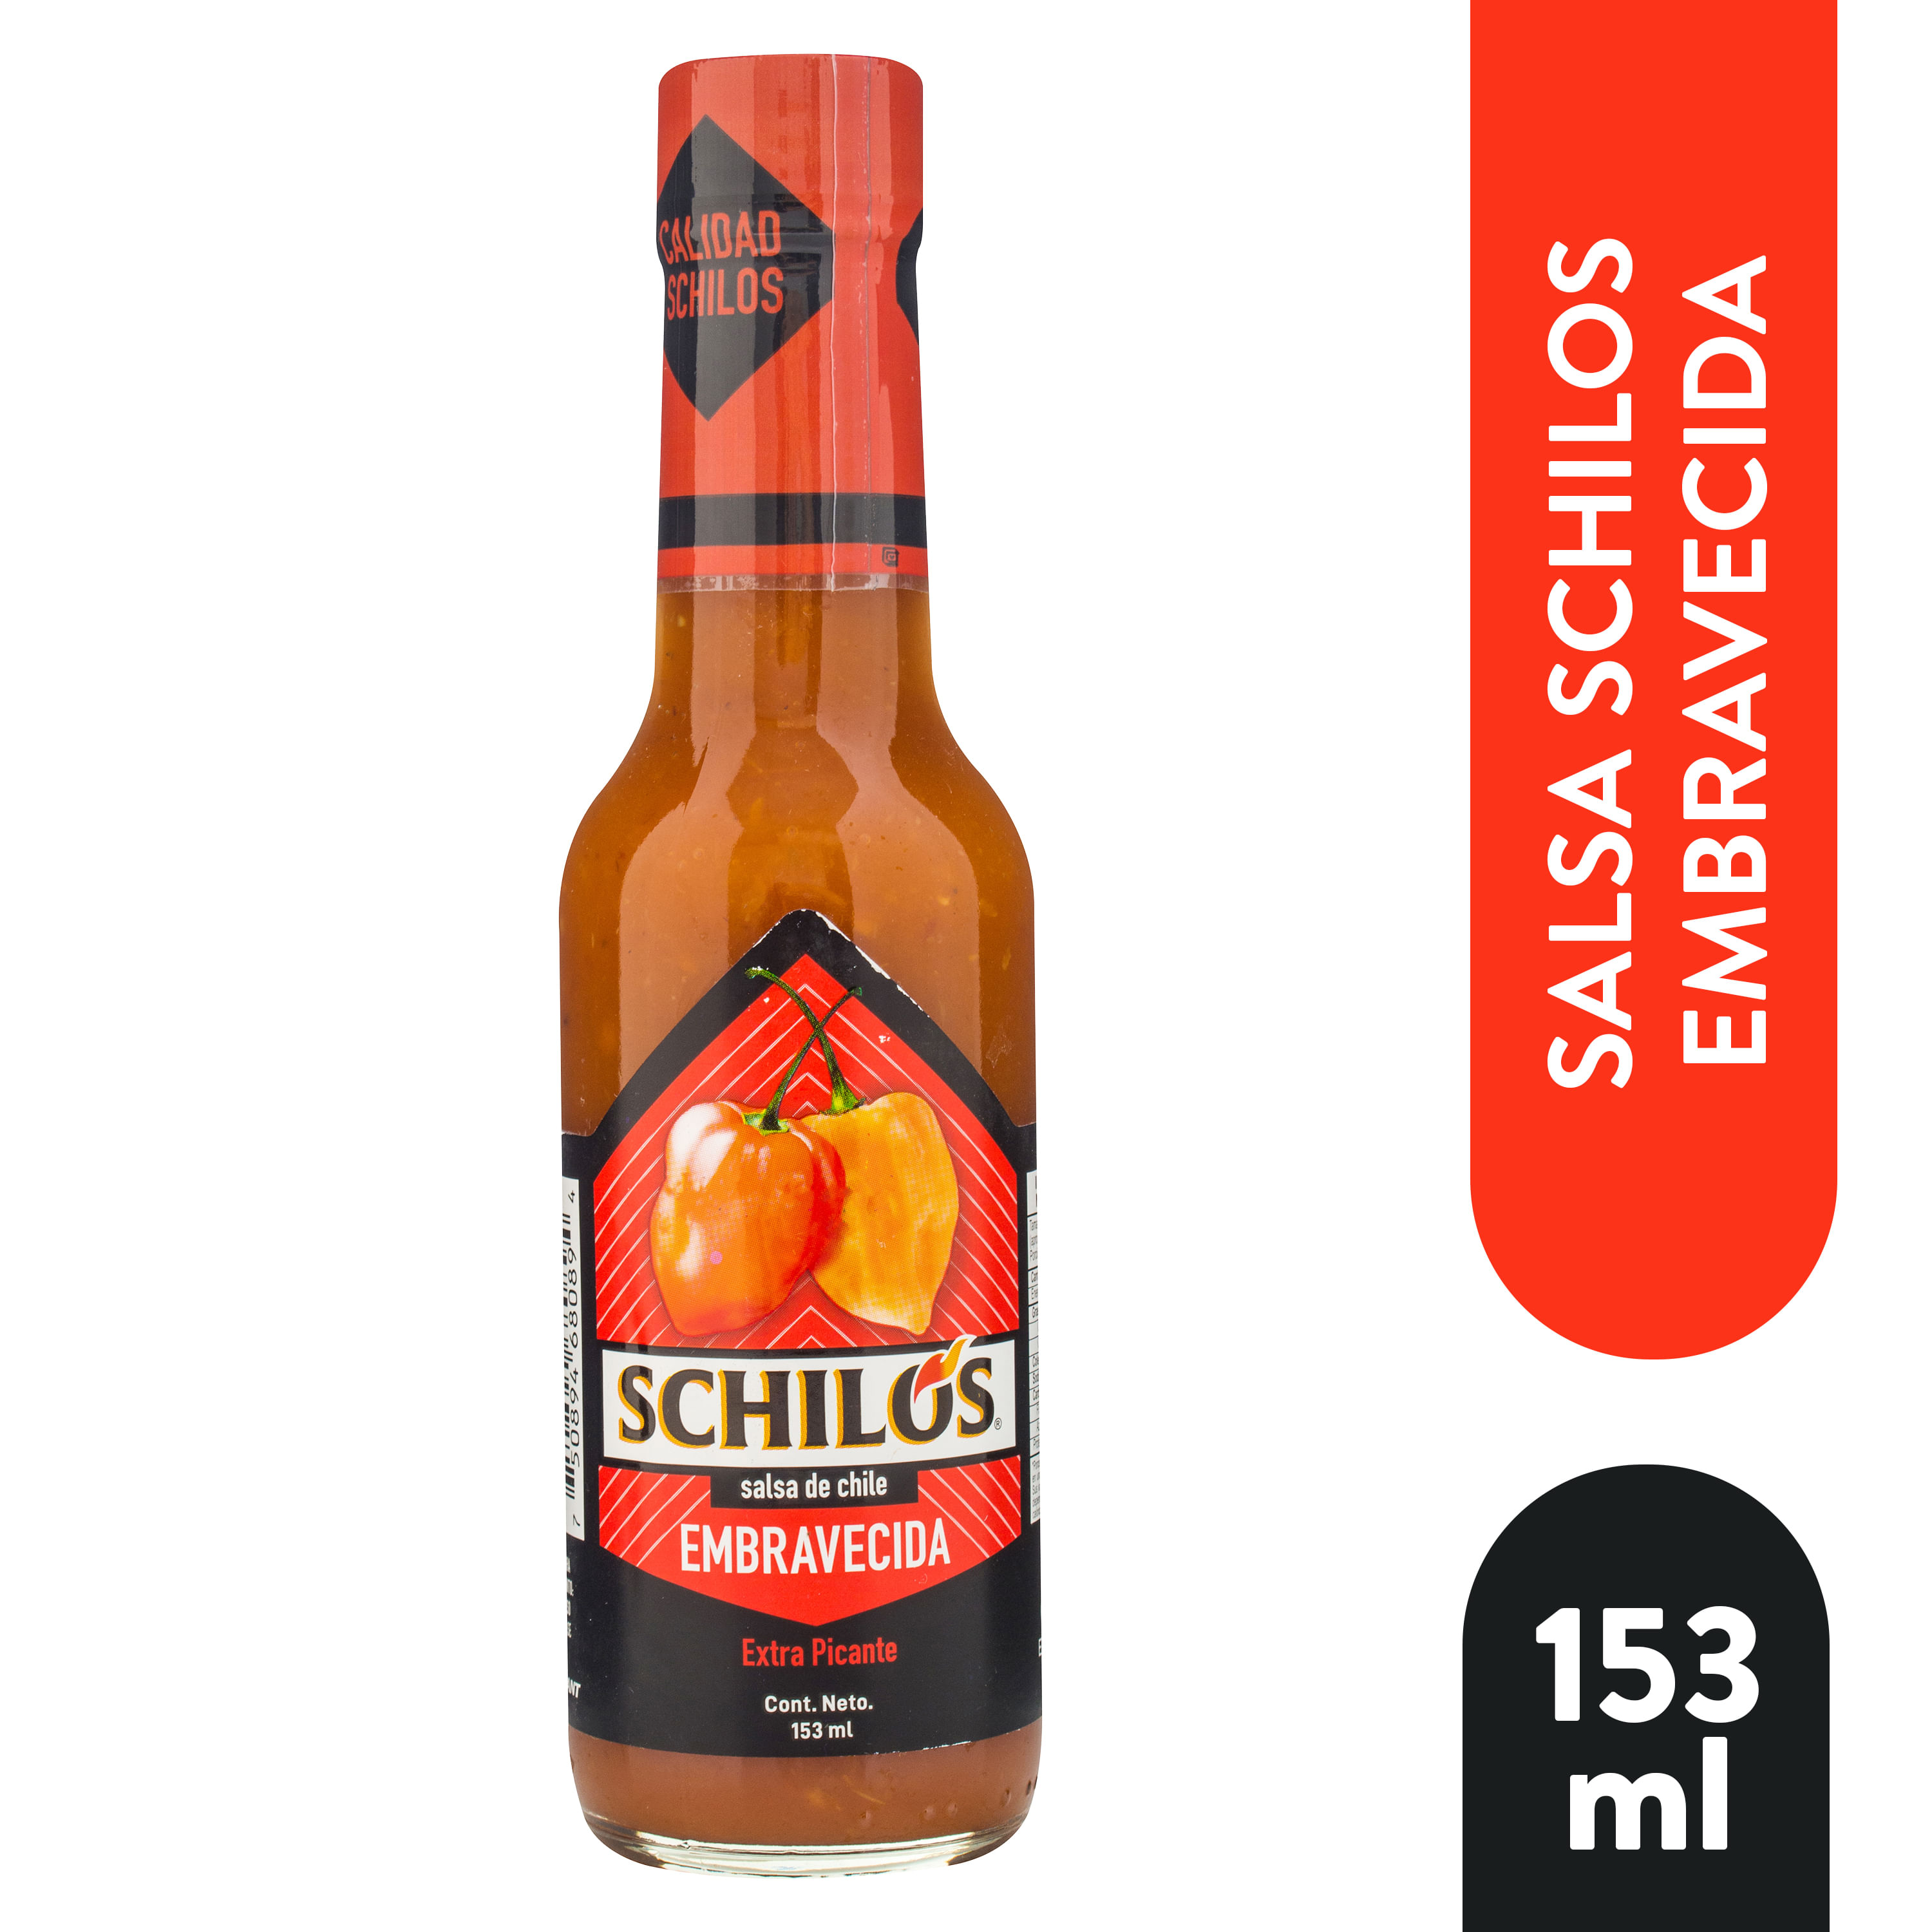 Chile-Schilos-Embravecido-153-ml-1-37830